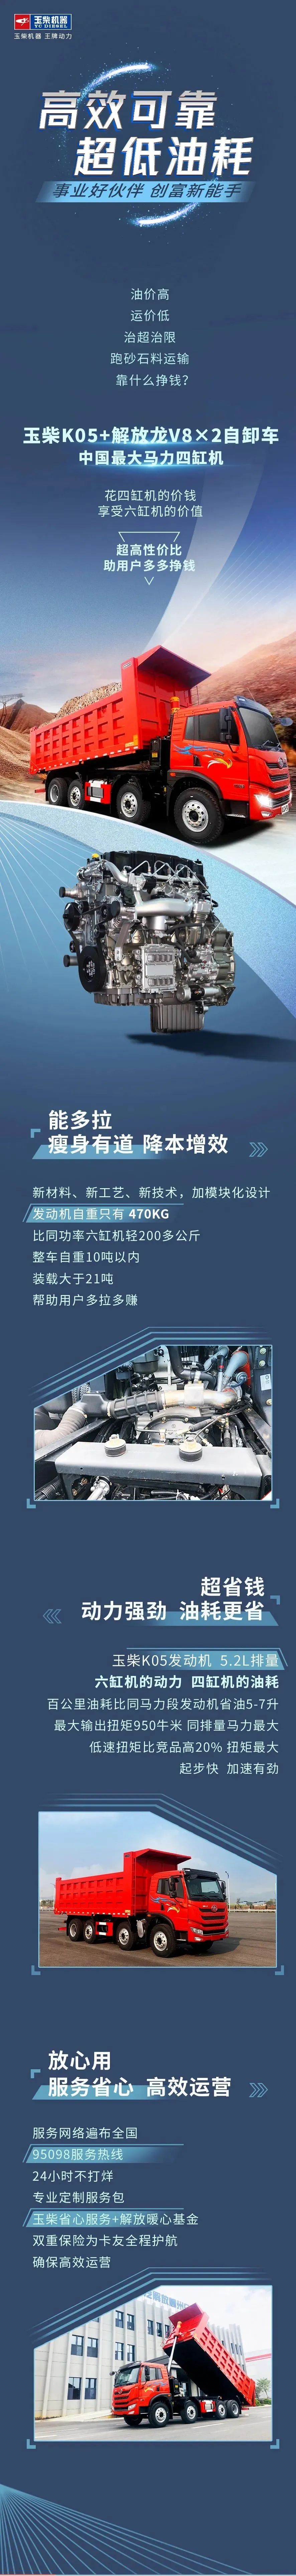 选配中国最大马力四缸机YCK05，解放自卸车跑出省油新纪录